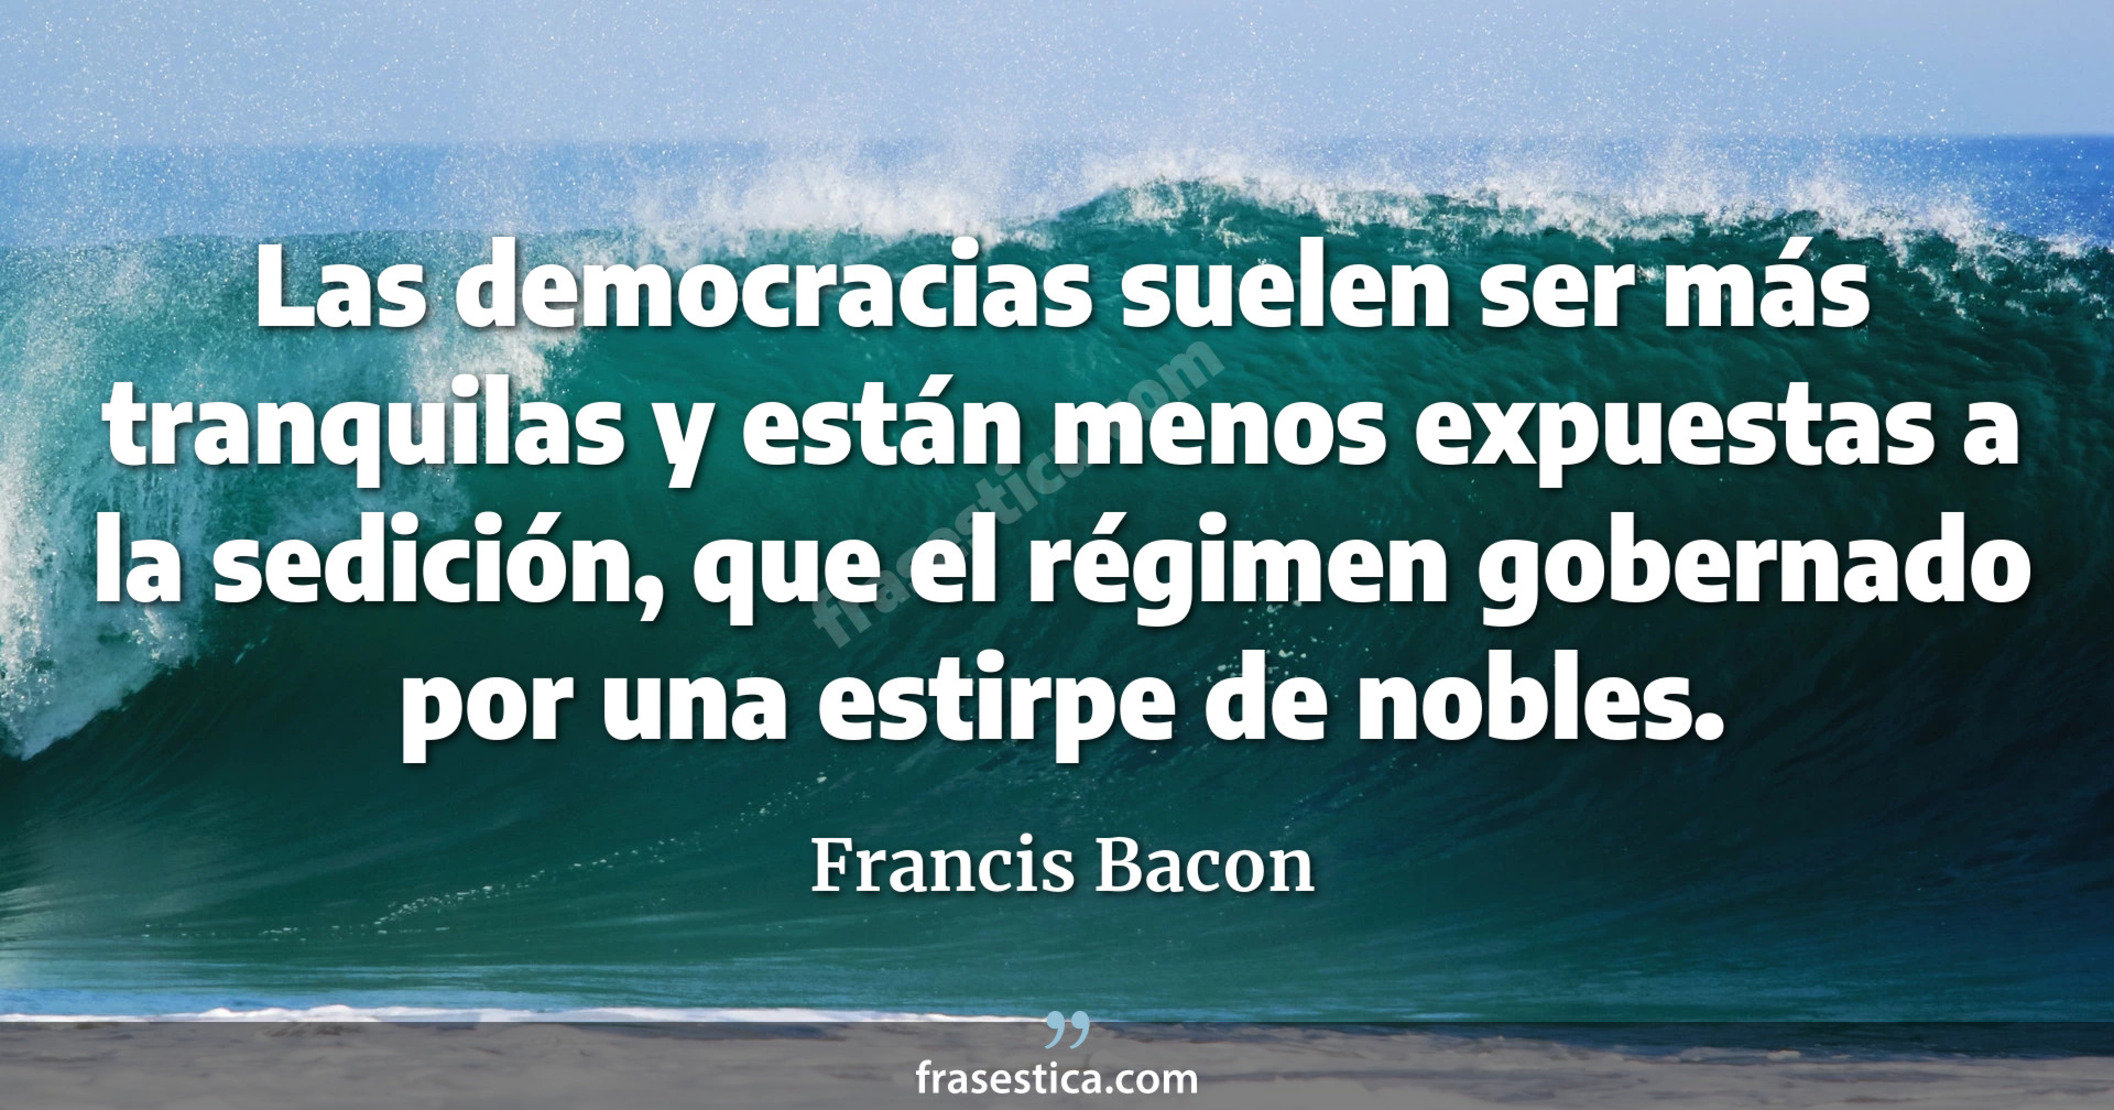 Las democracias suelen ser más tranquilas y están menos expuestas a la sedición, que el régimen gobernado por una estirpe de nobles. - Francis Bacon